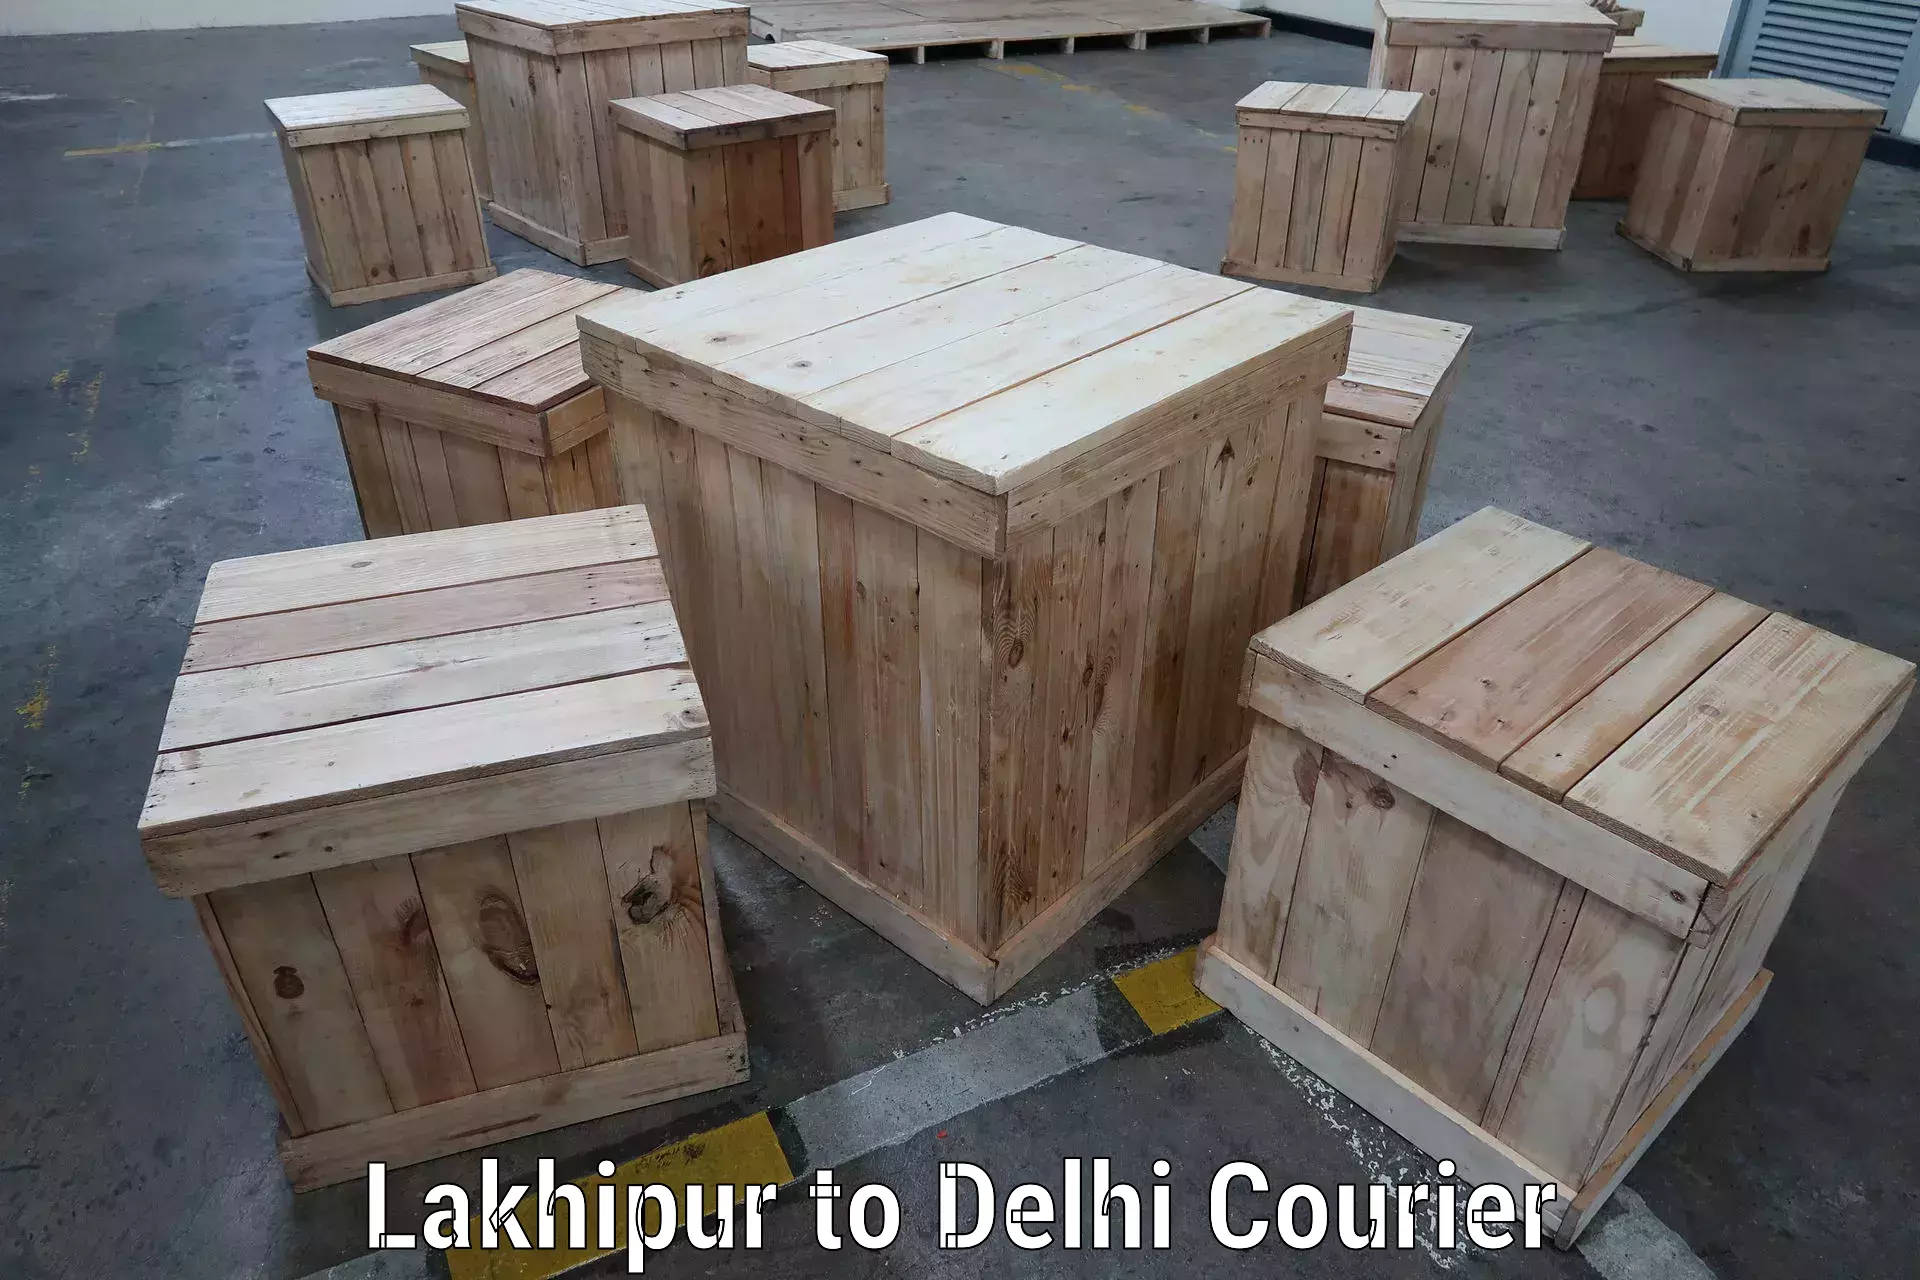 Courier service comparison Lakhipur to IIT Delhi